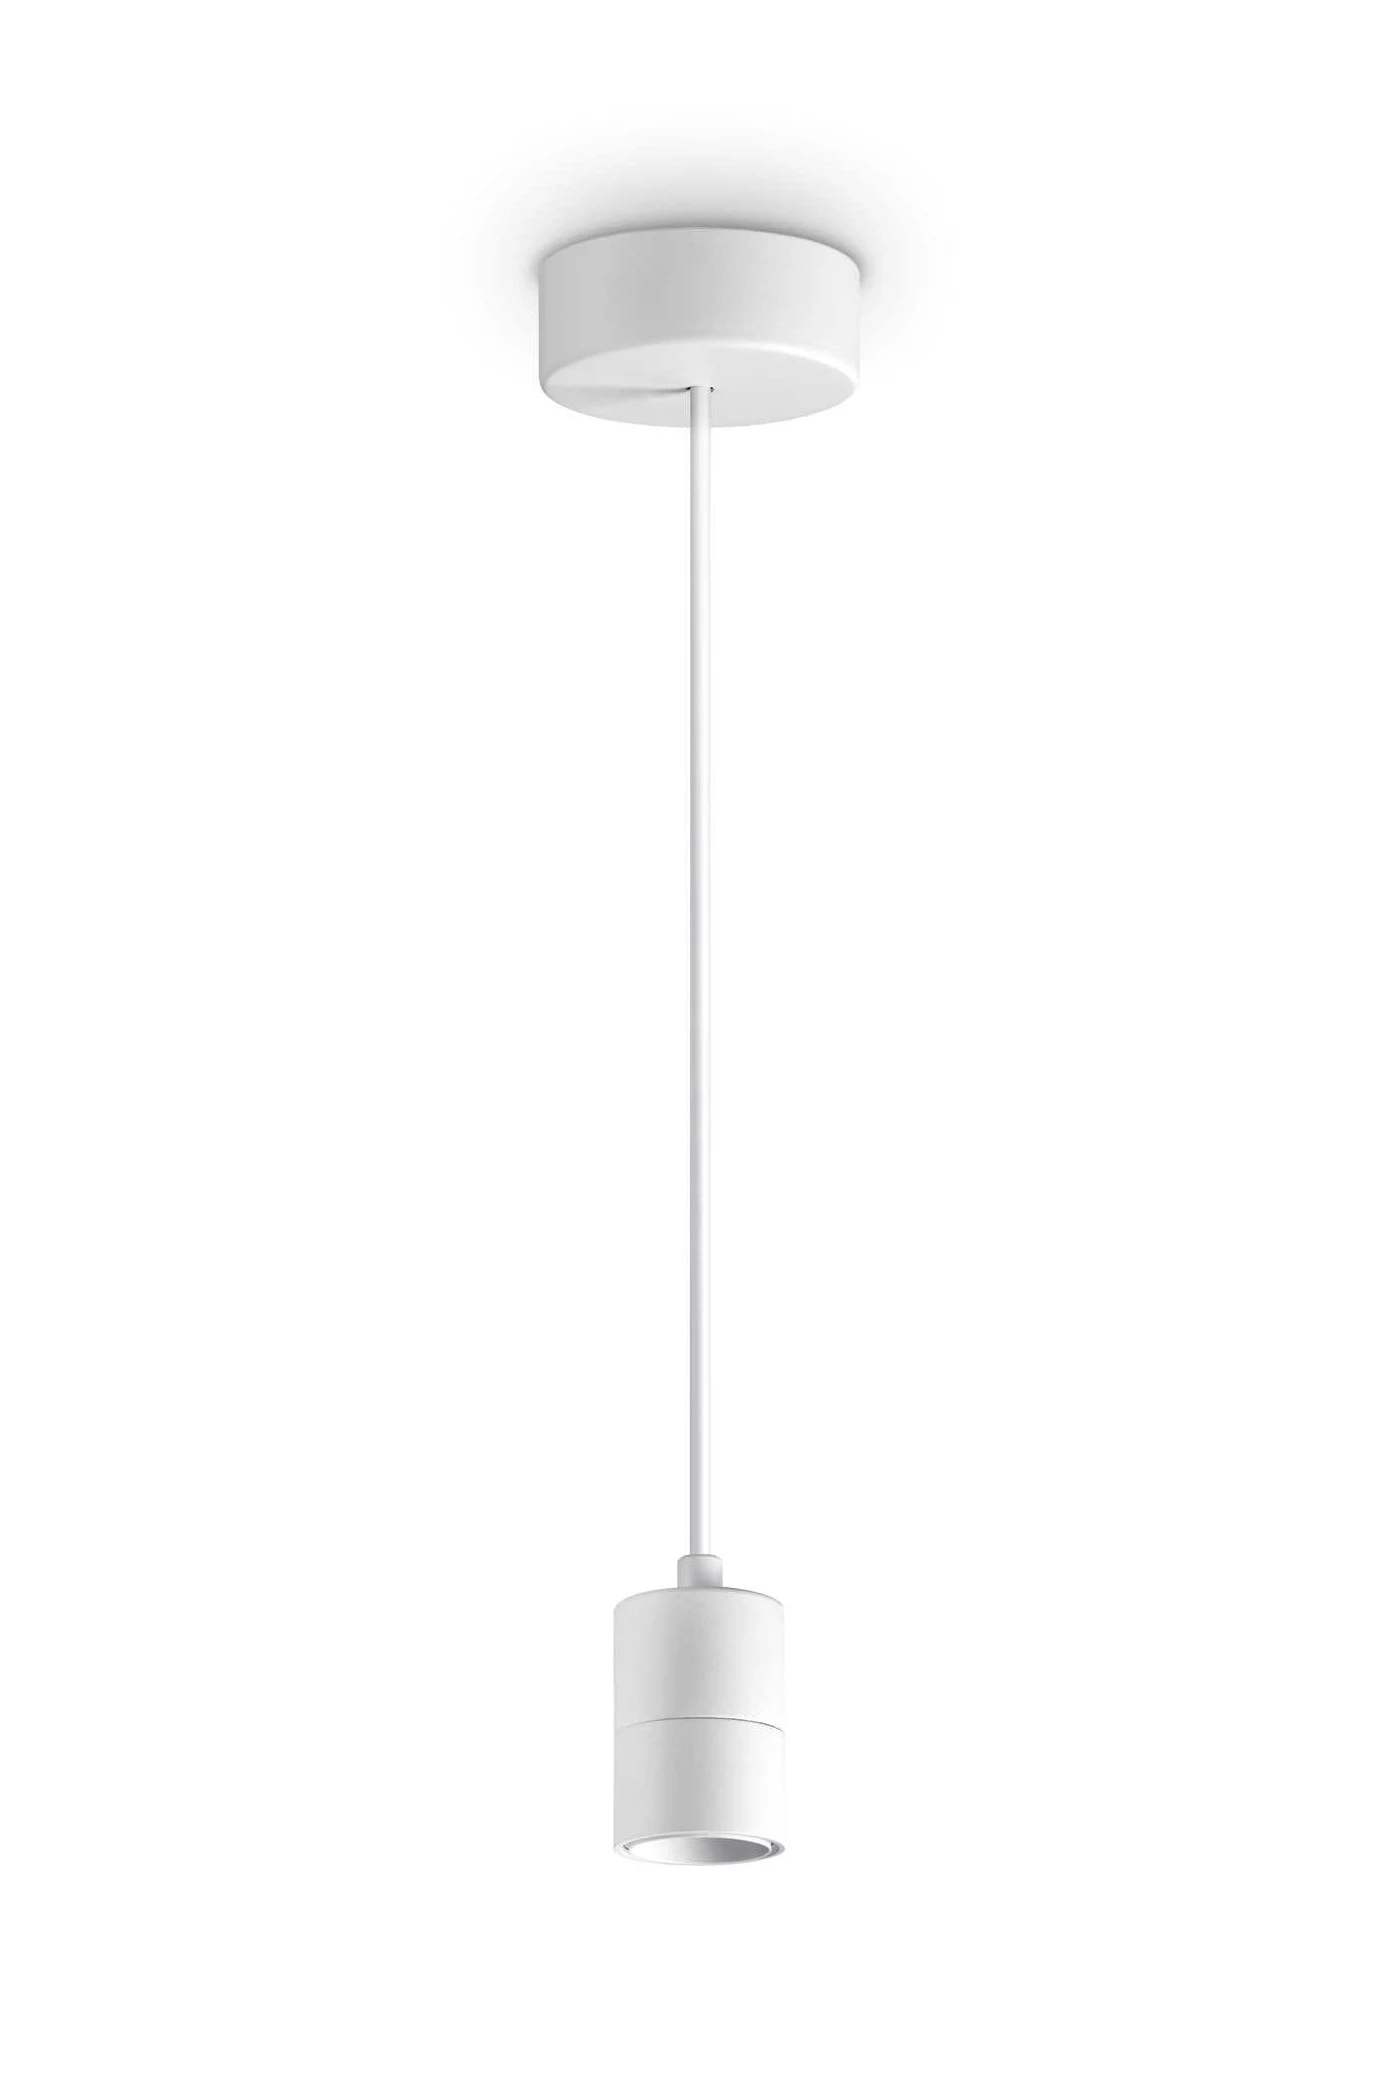   
                        Люстра IDEAL LUX (Італія) 45031    
                         у стилі хай-тек.  
                        Тип джерела світла: cвітлодіодні led, енергозберігаючі, розжарювання.                         Форма: коло.                                                                          фото 1